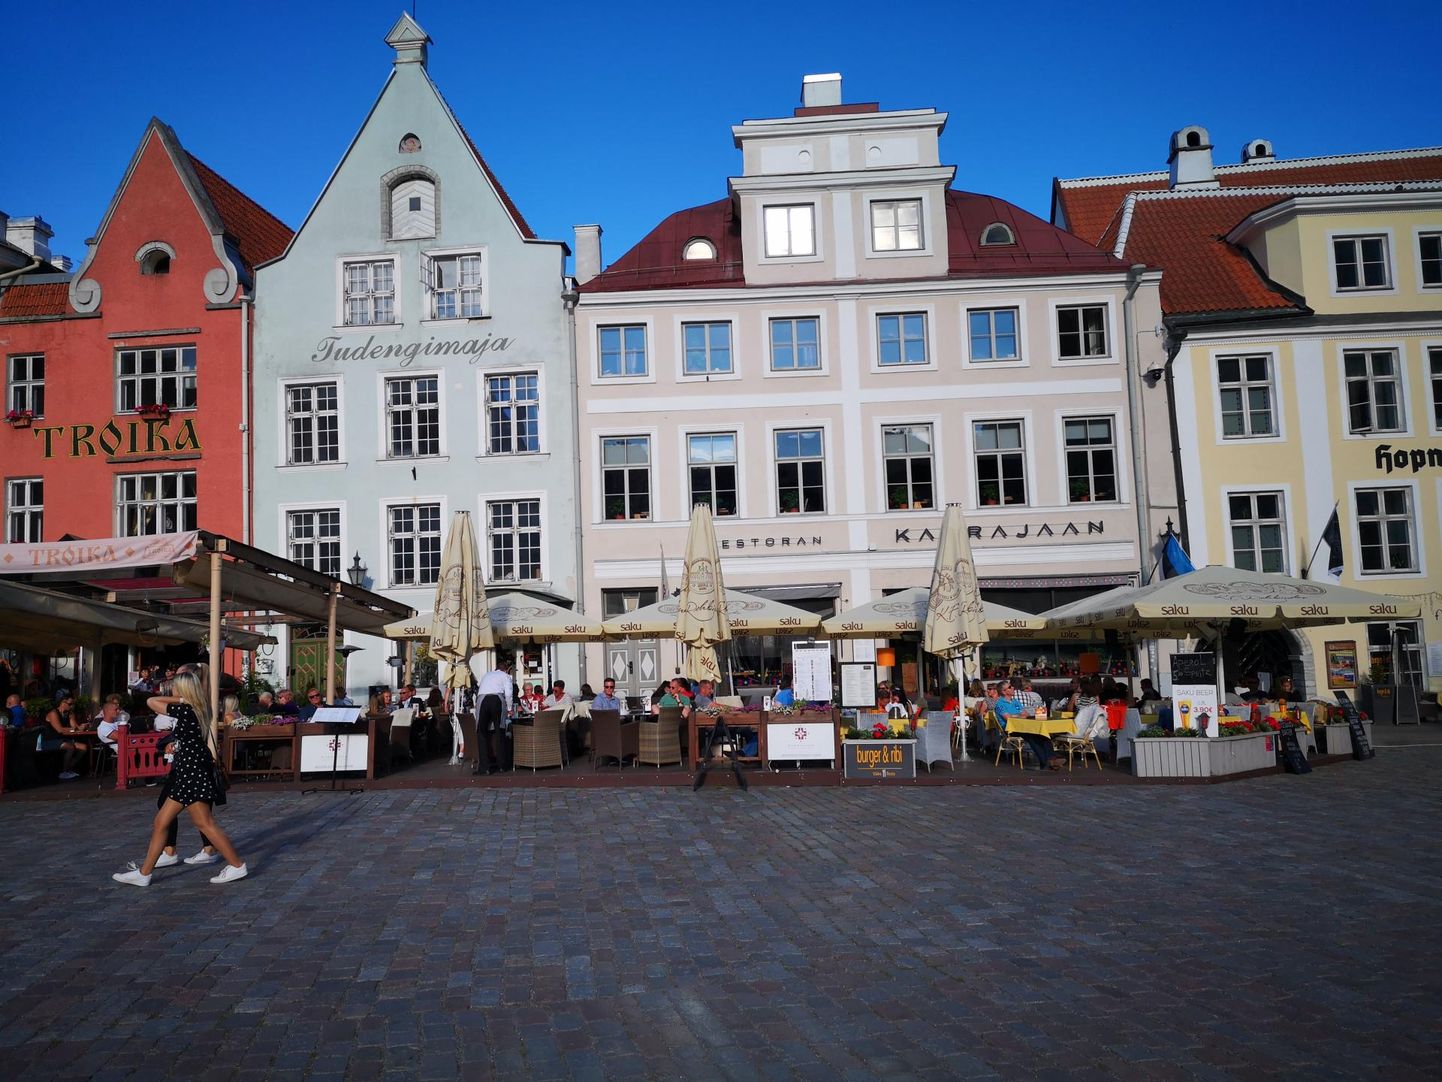 Restaurants in Tallinn’s Old Town.